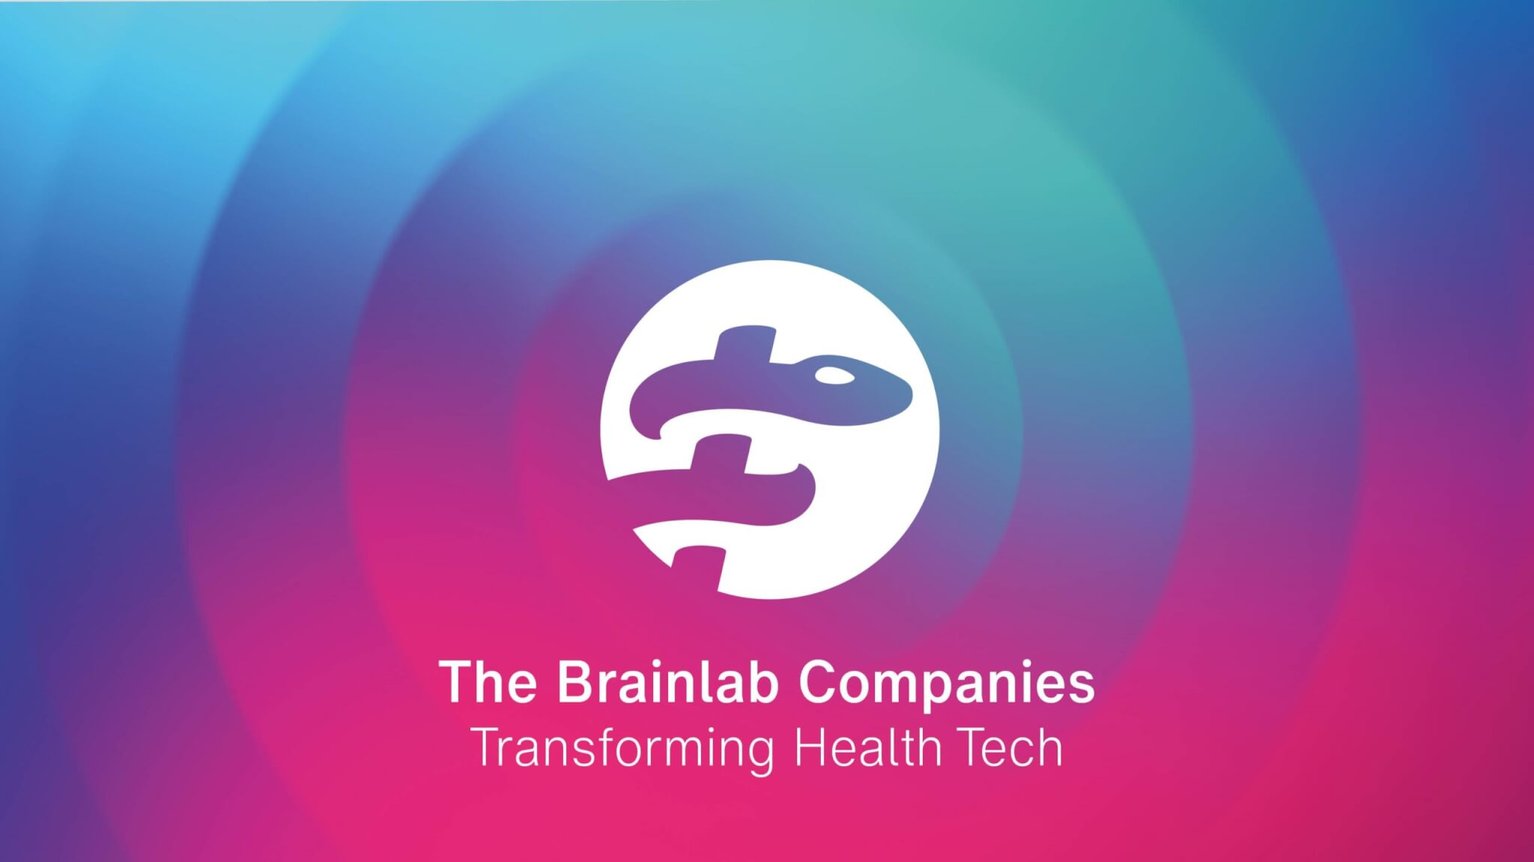 Gemeinsames Markendach für Brainlab Unternehmensgruppe „Transforming Health Tech“